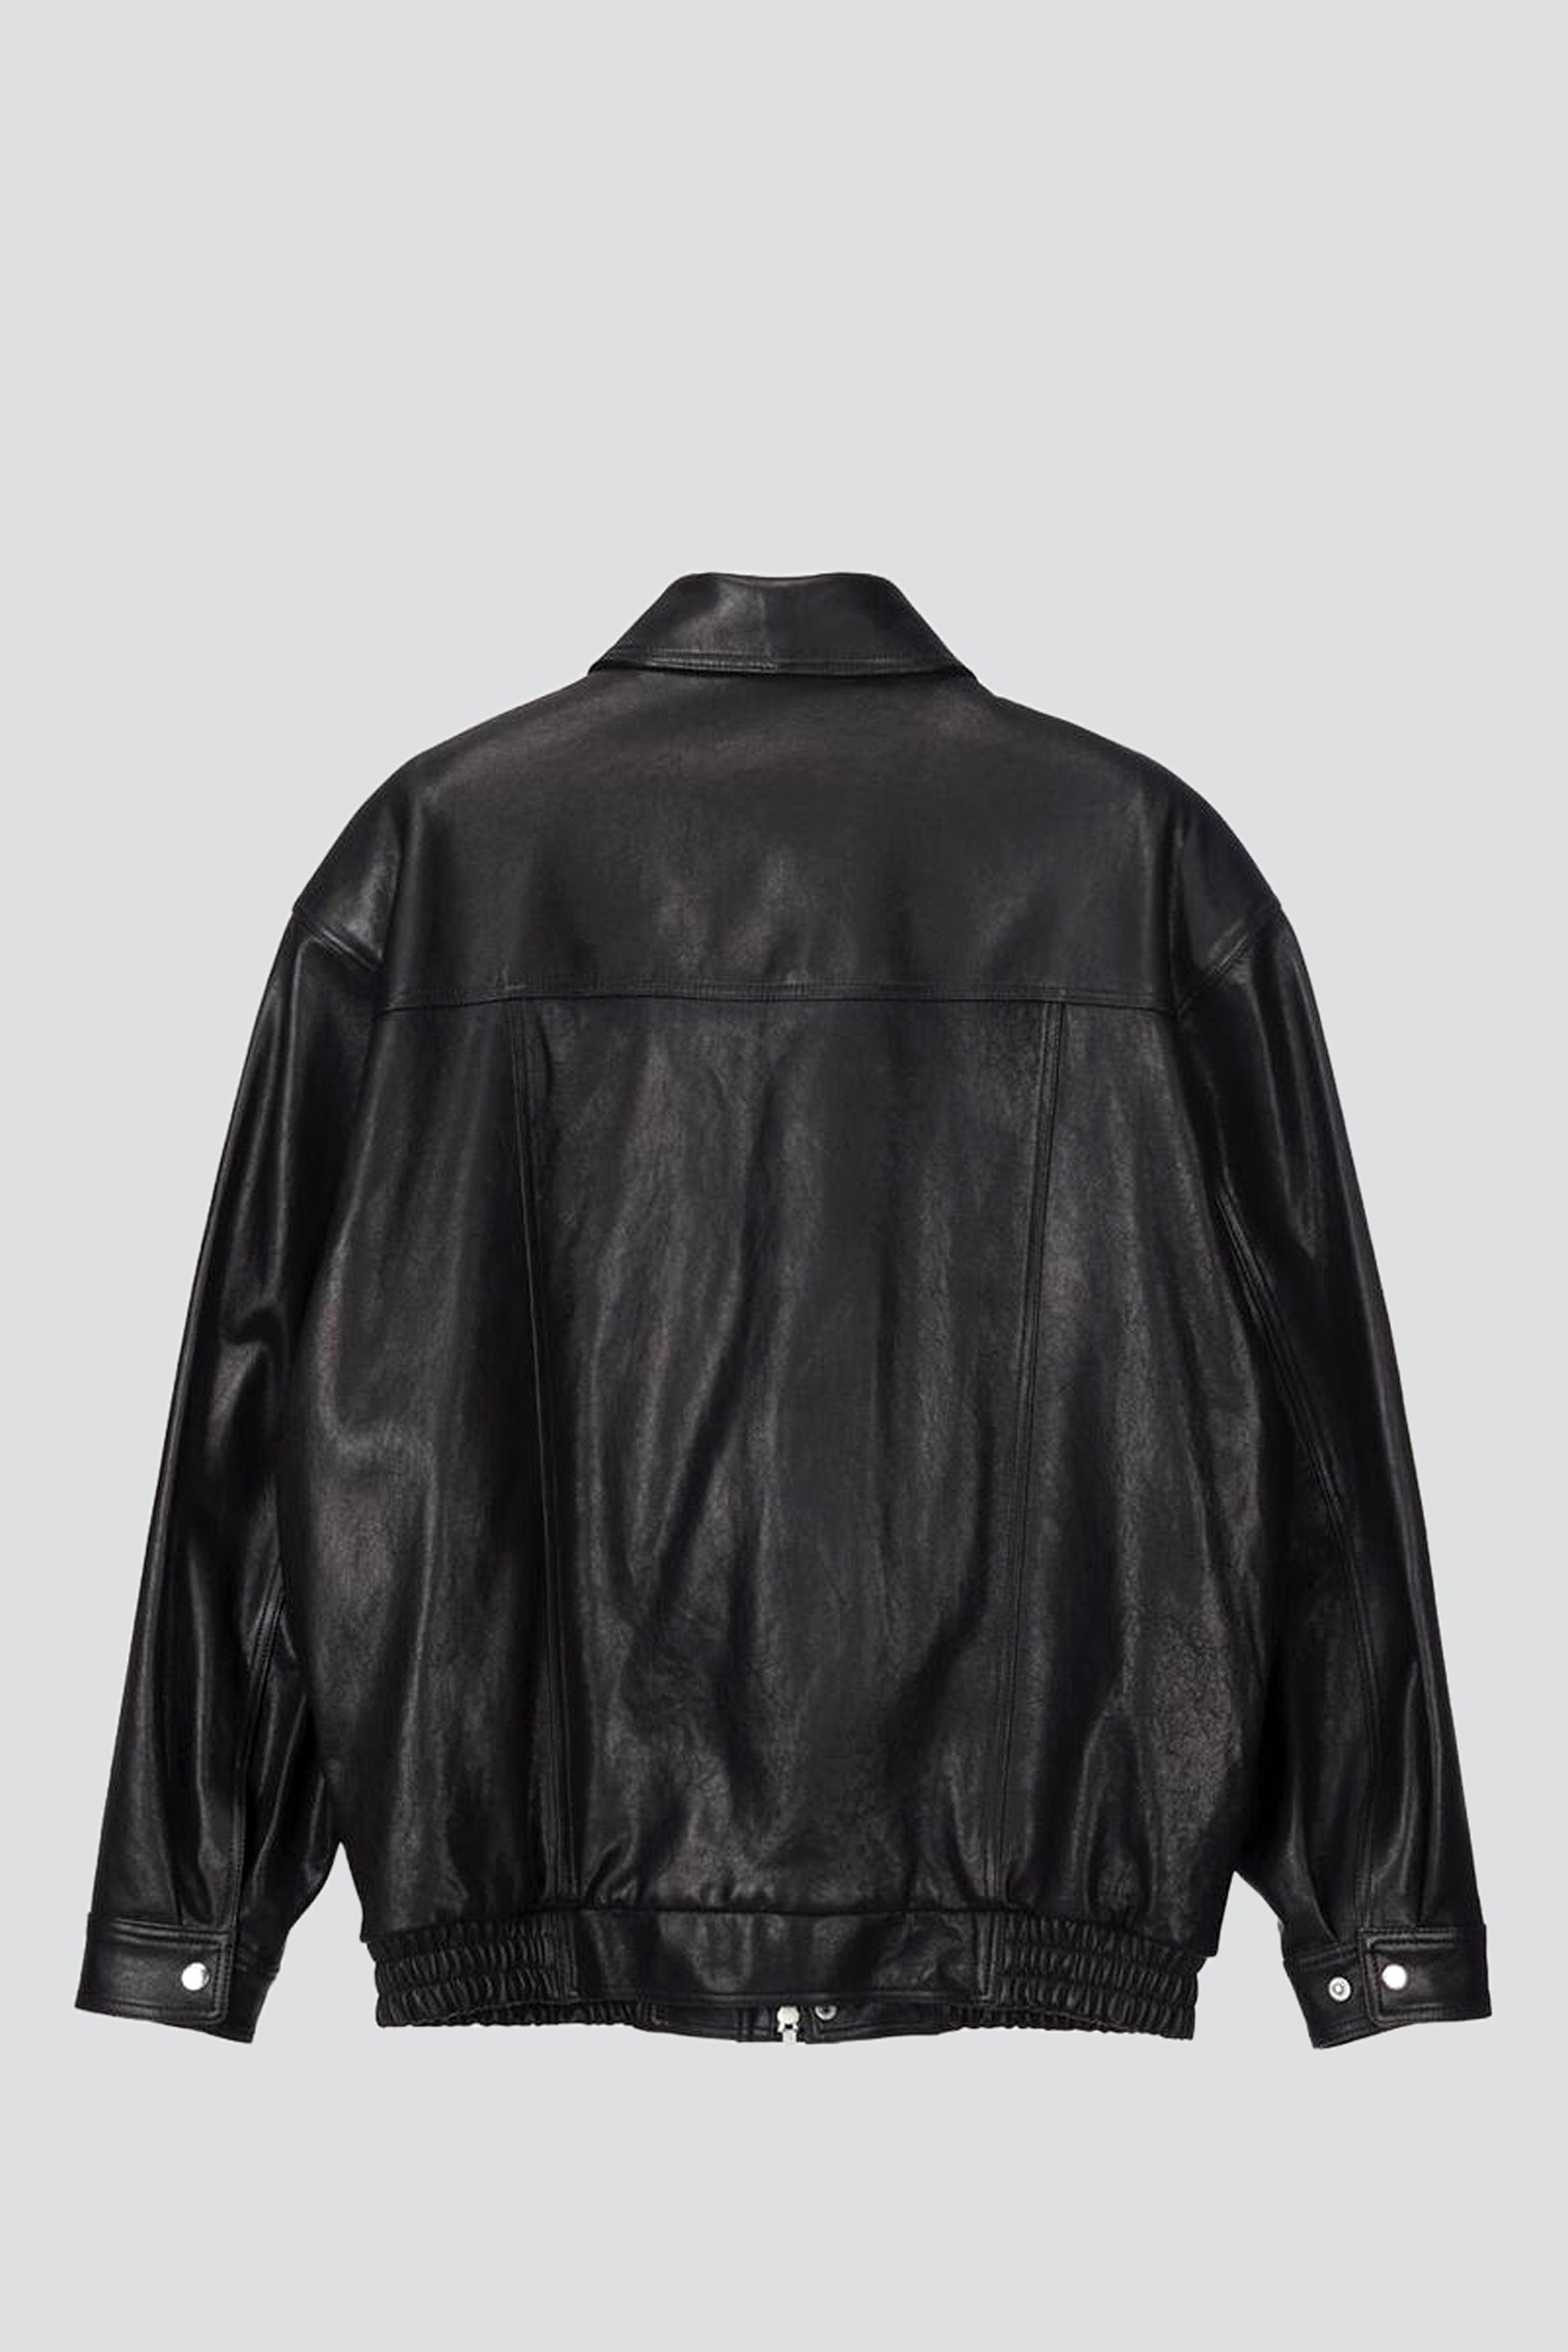 Unisex Black Oversized Vintage Leather Blouson